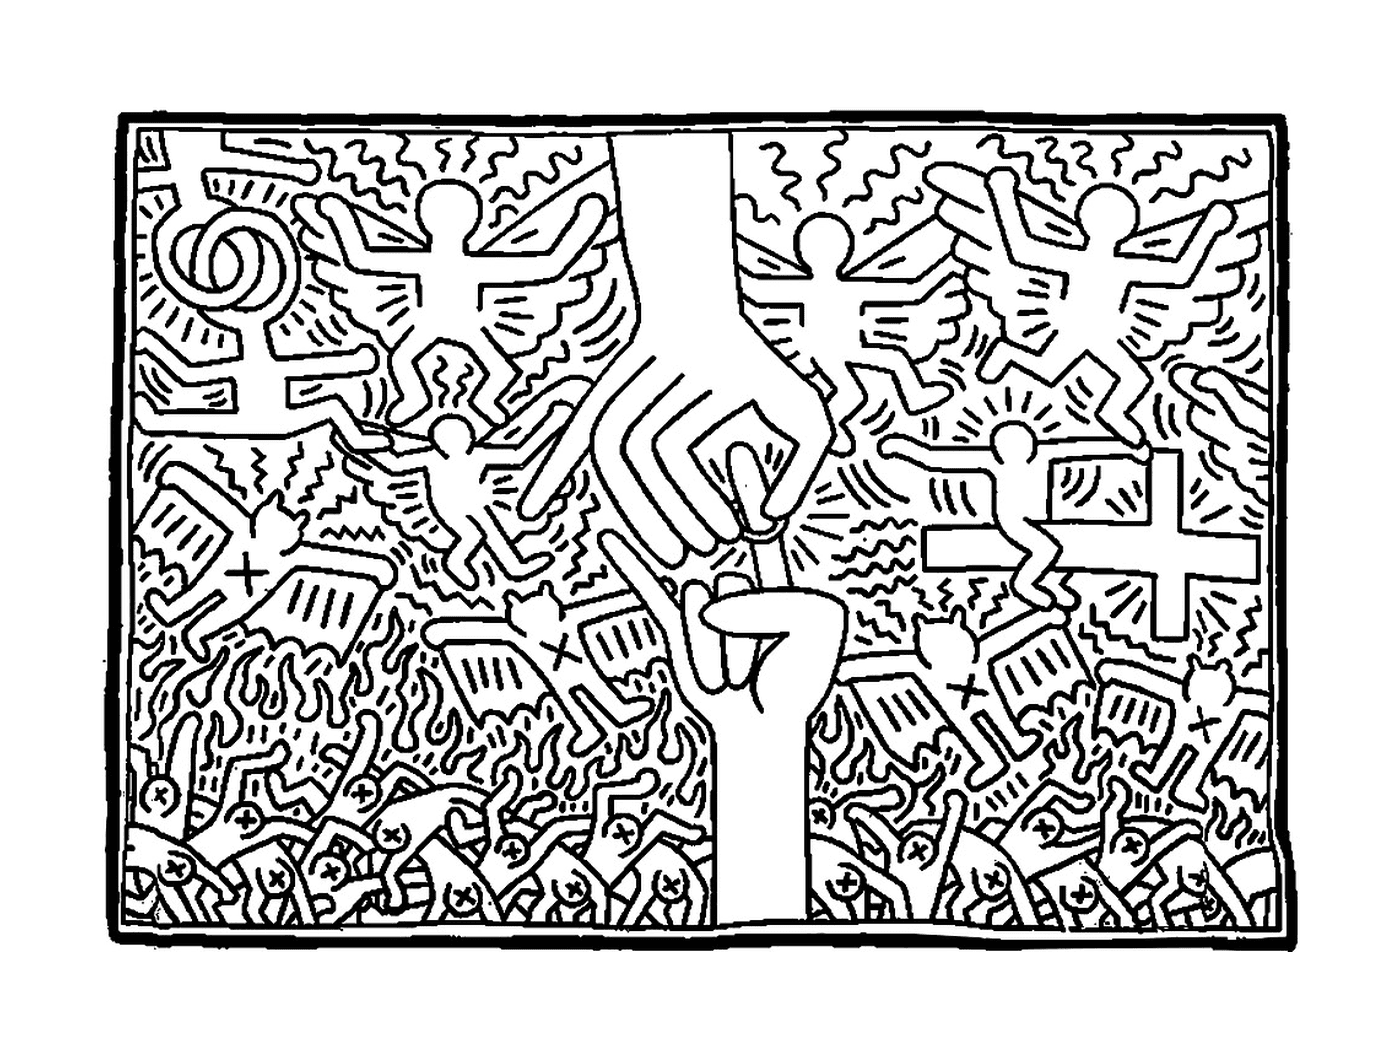  una mano che cerca di cogliere un segno di pace nello stile di Keith Haring 